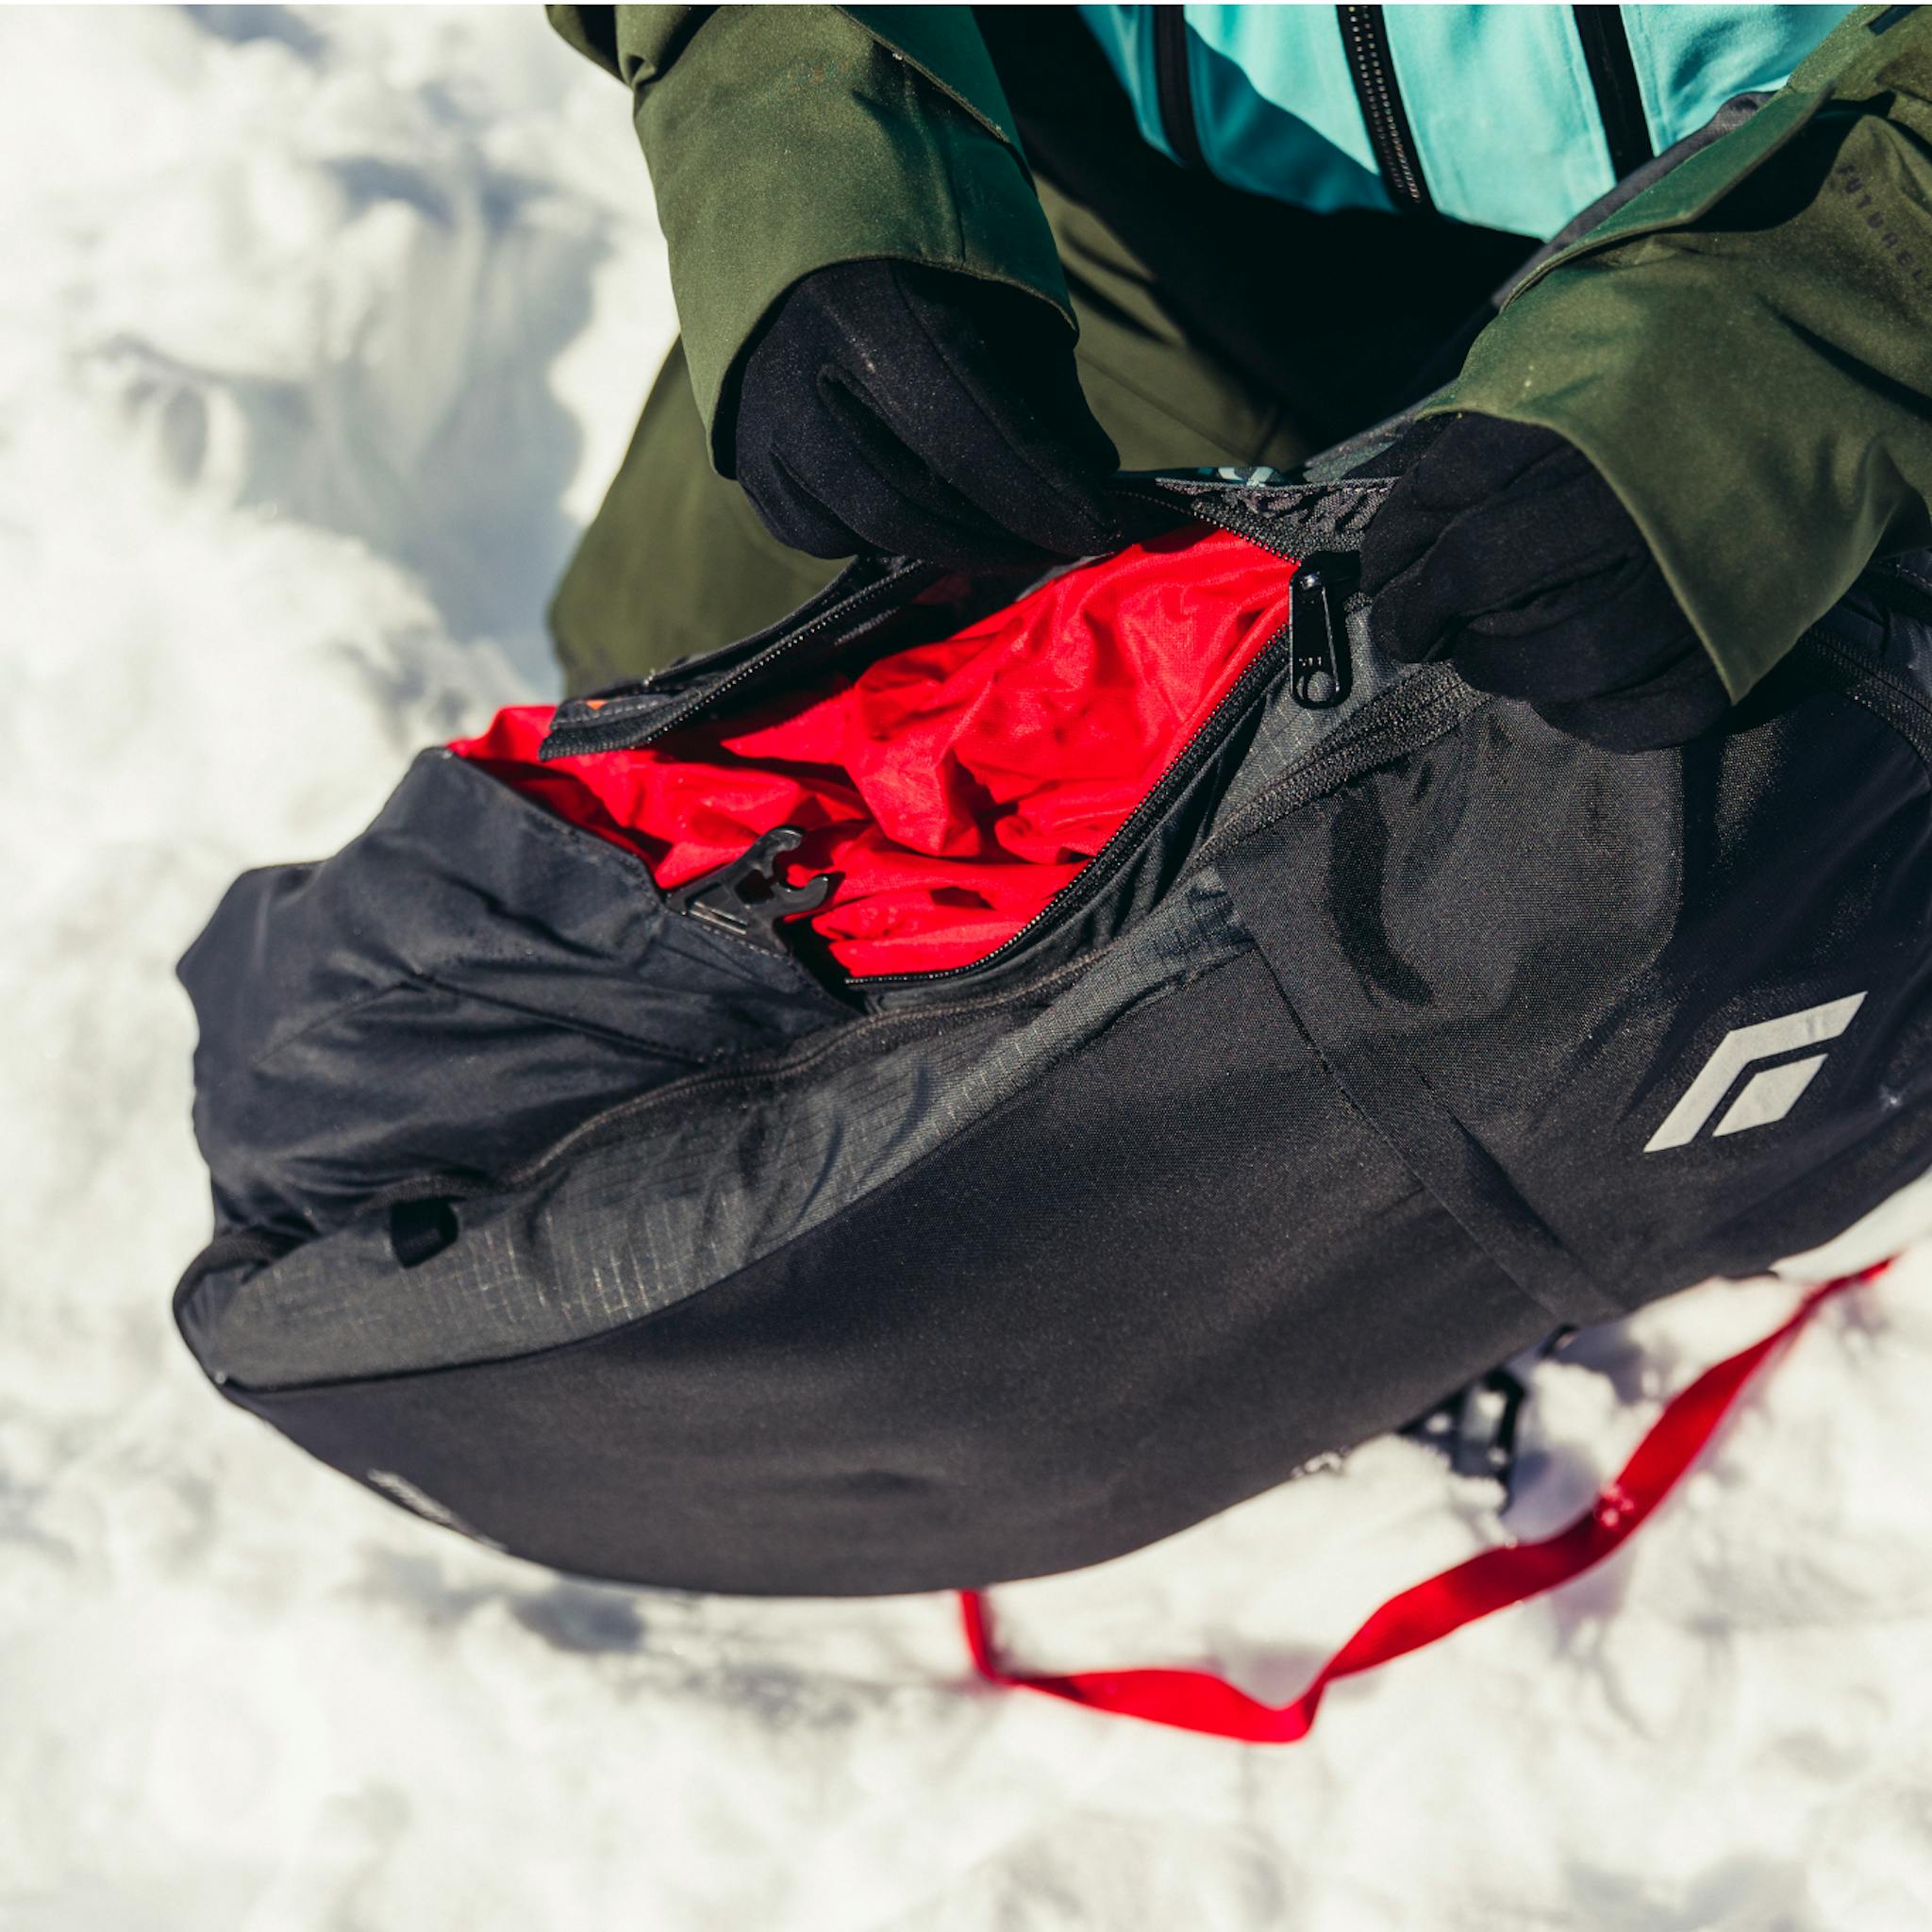 Ein Skifahrer packt den Jetforce-Airbag zurück in den Rucksack.